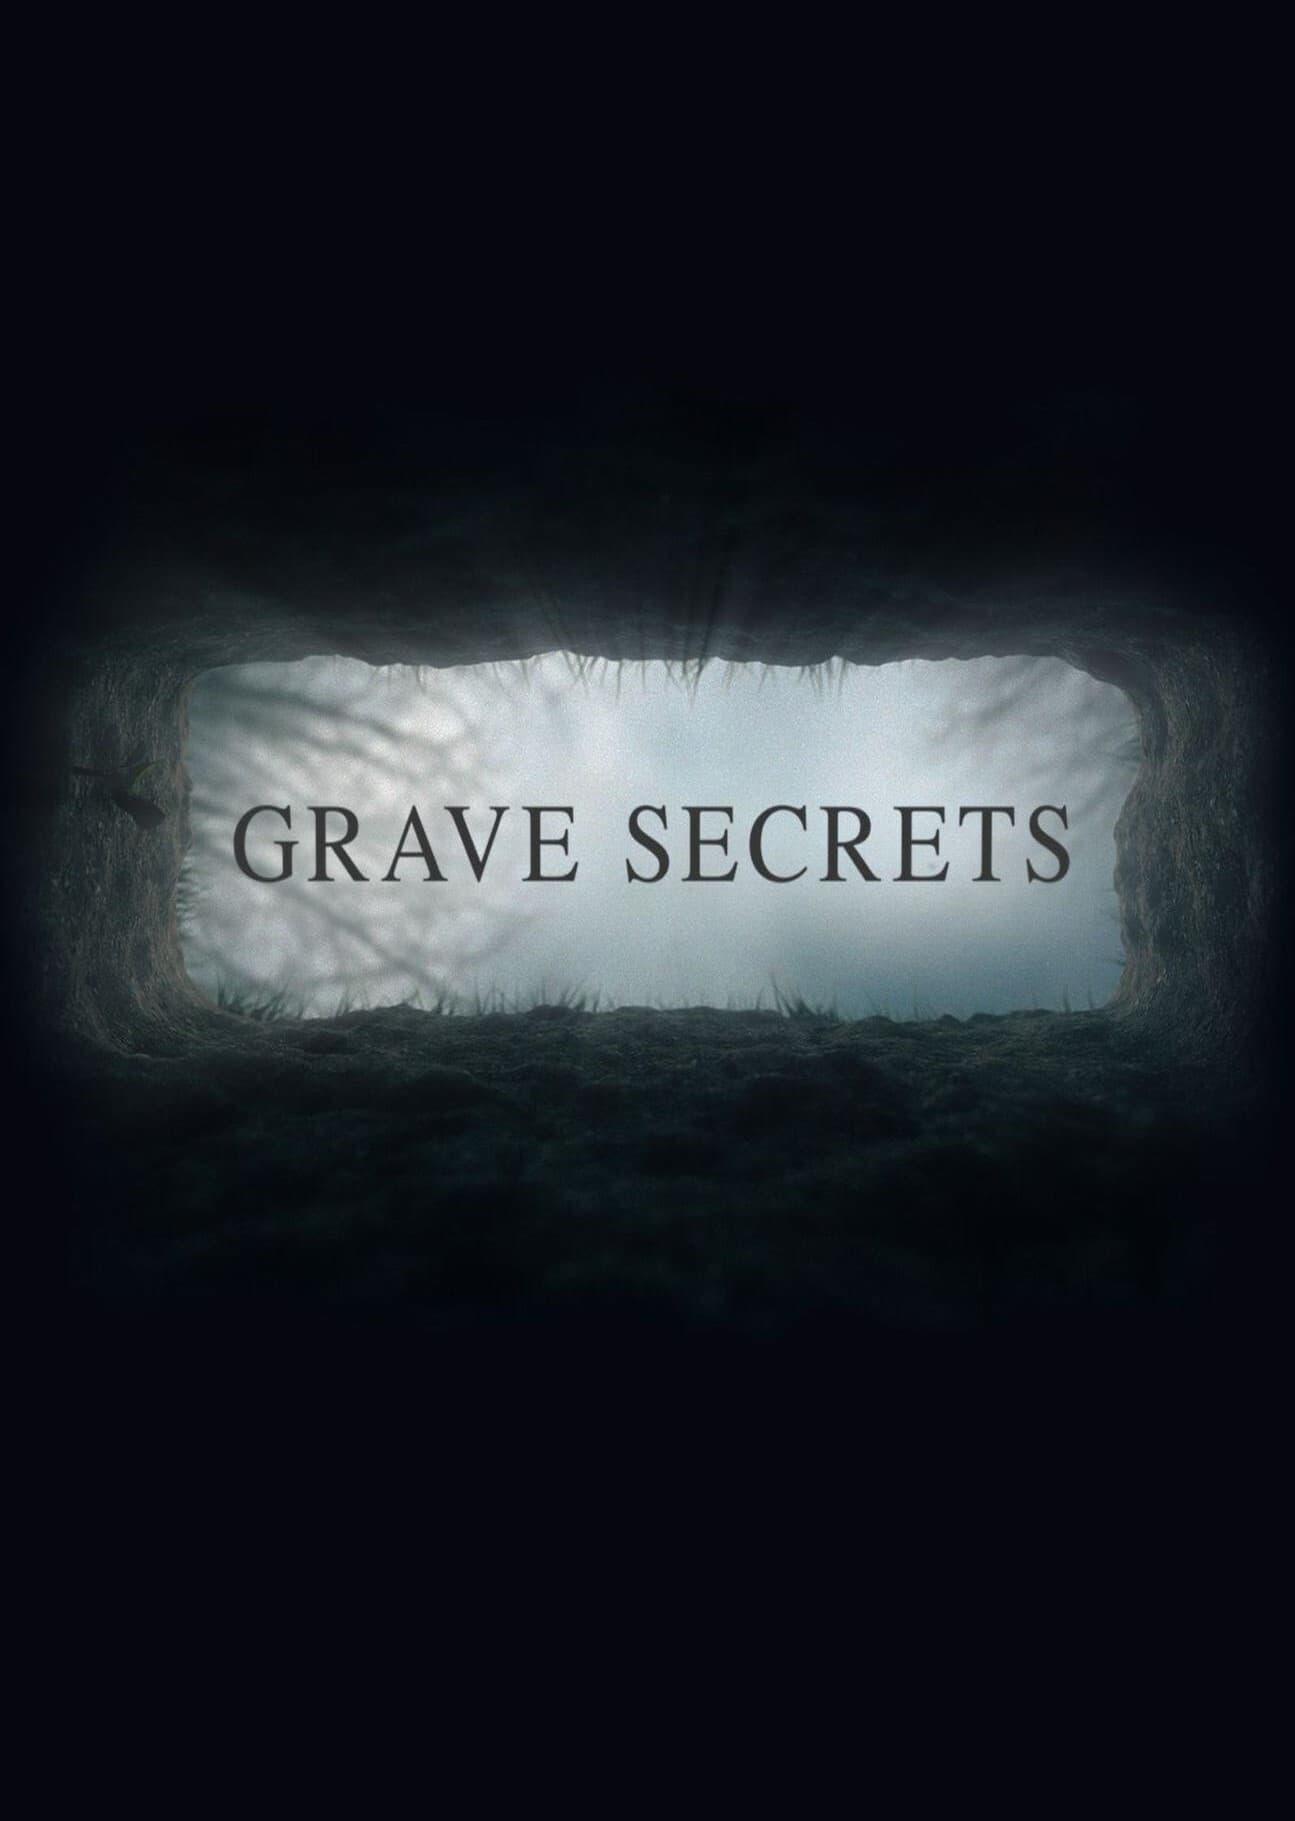 Eltemetett titkok (Grave Secrets) 2016.